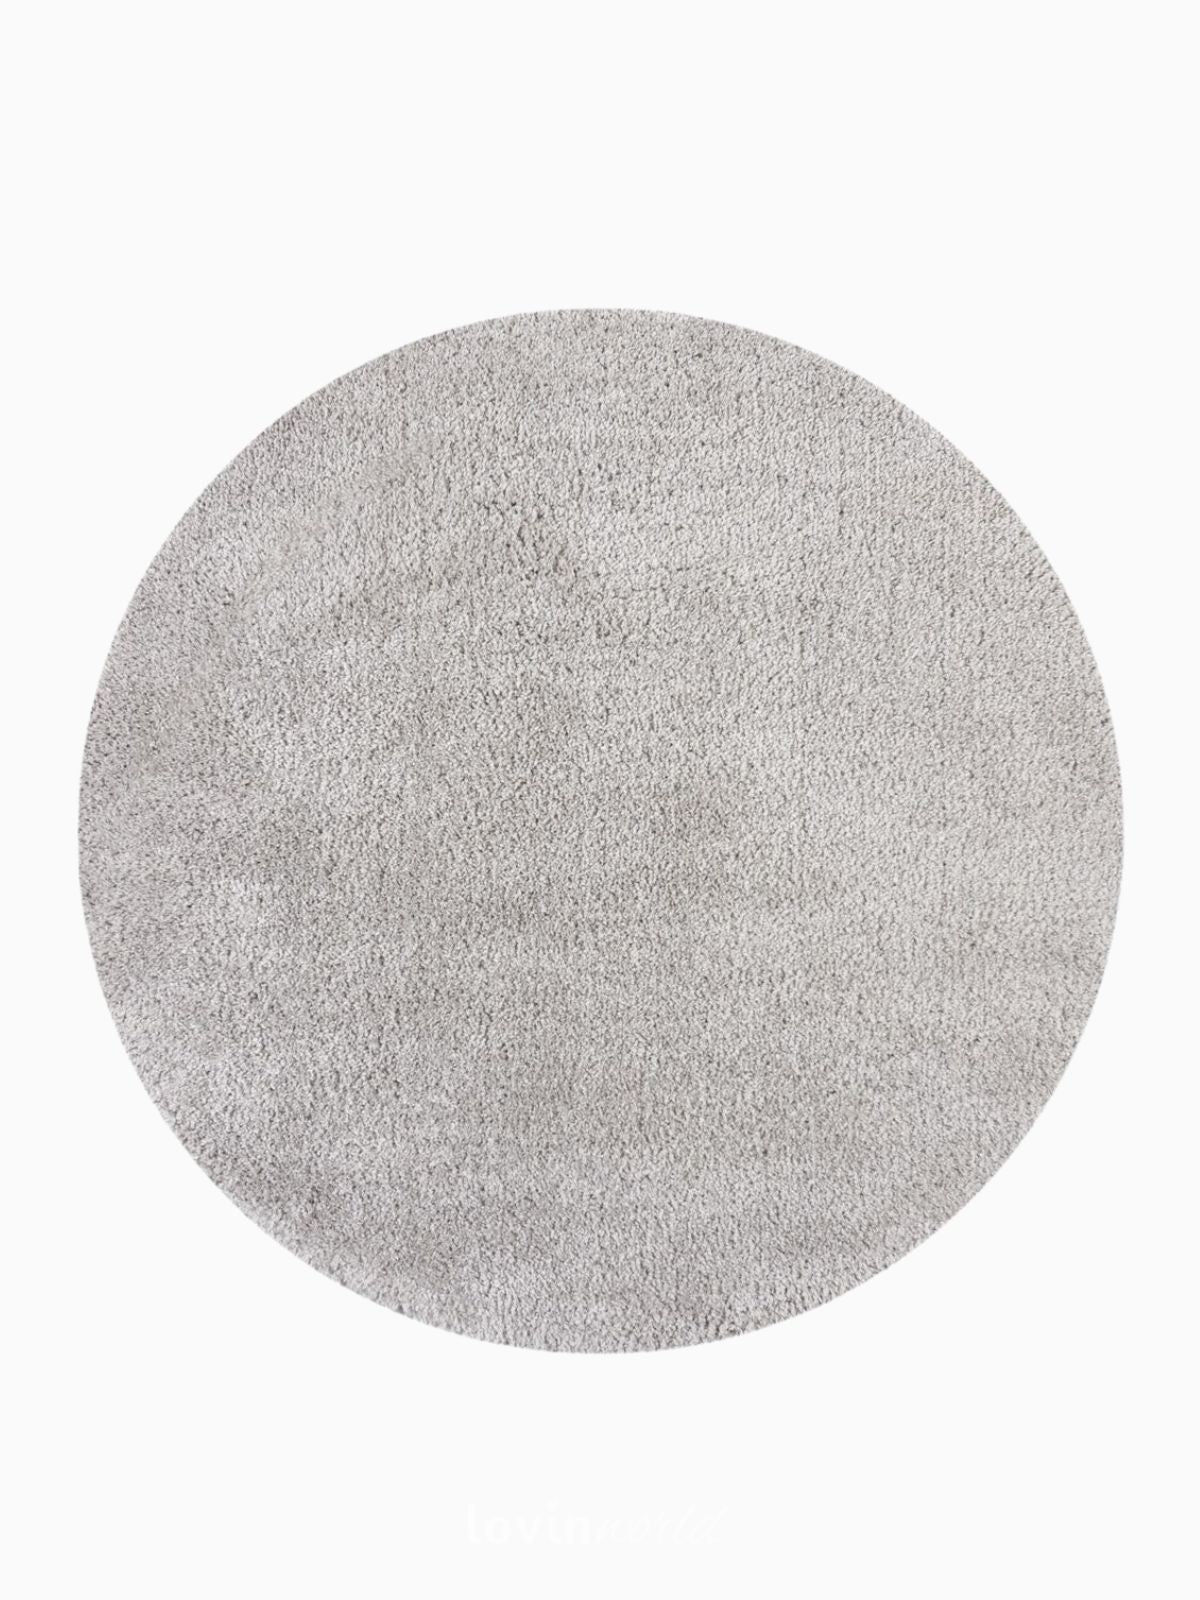 Tappeto rotondo shaggy Feather Soft in polipropilene, colore grigio 133x133 cm.-1